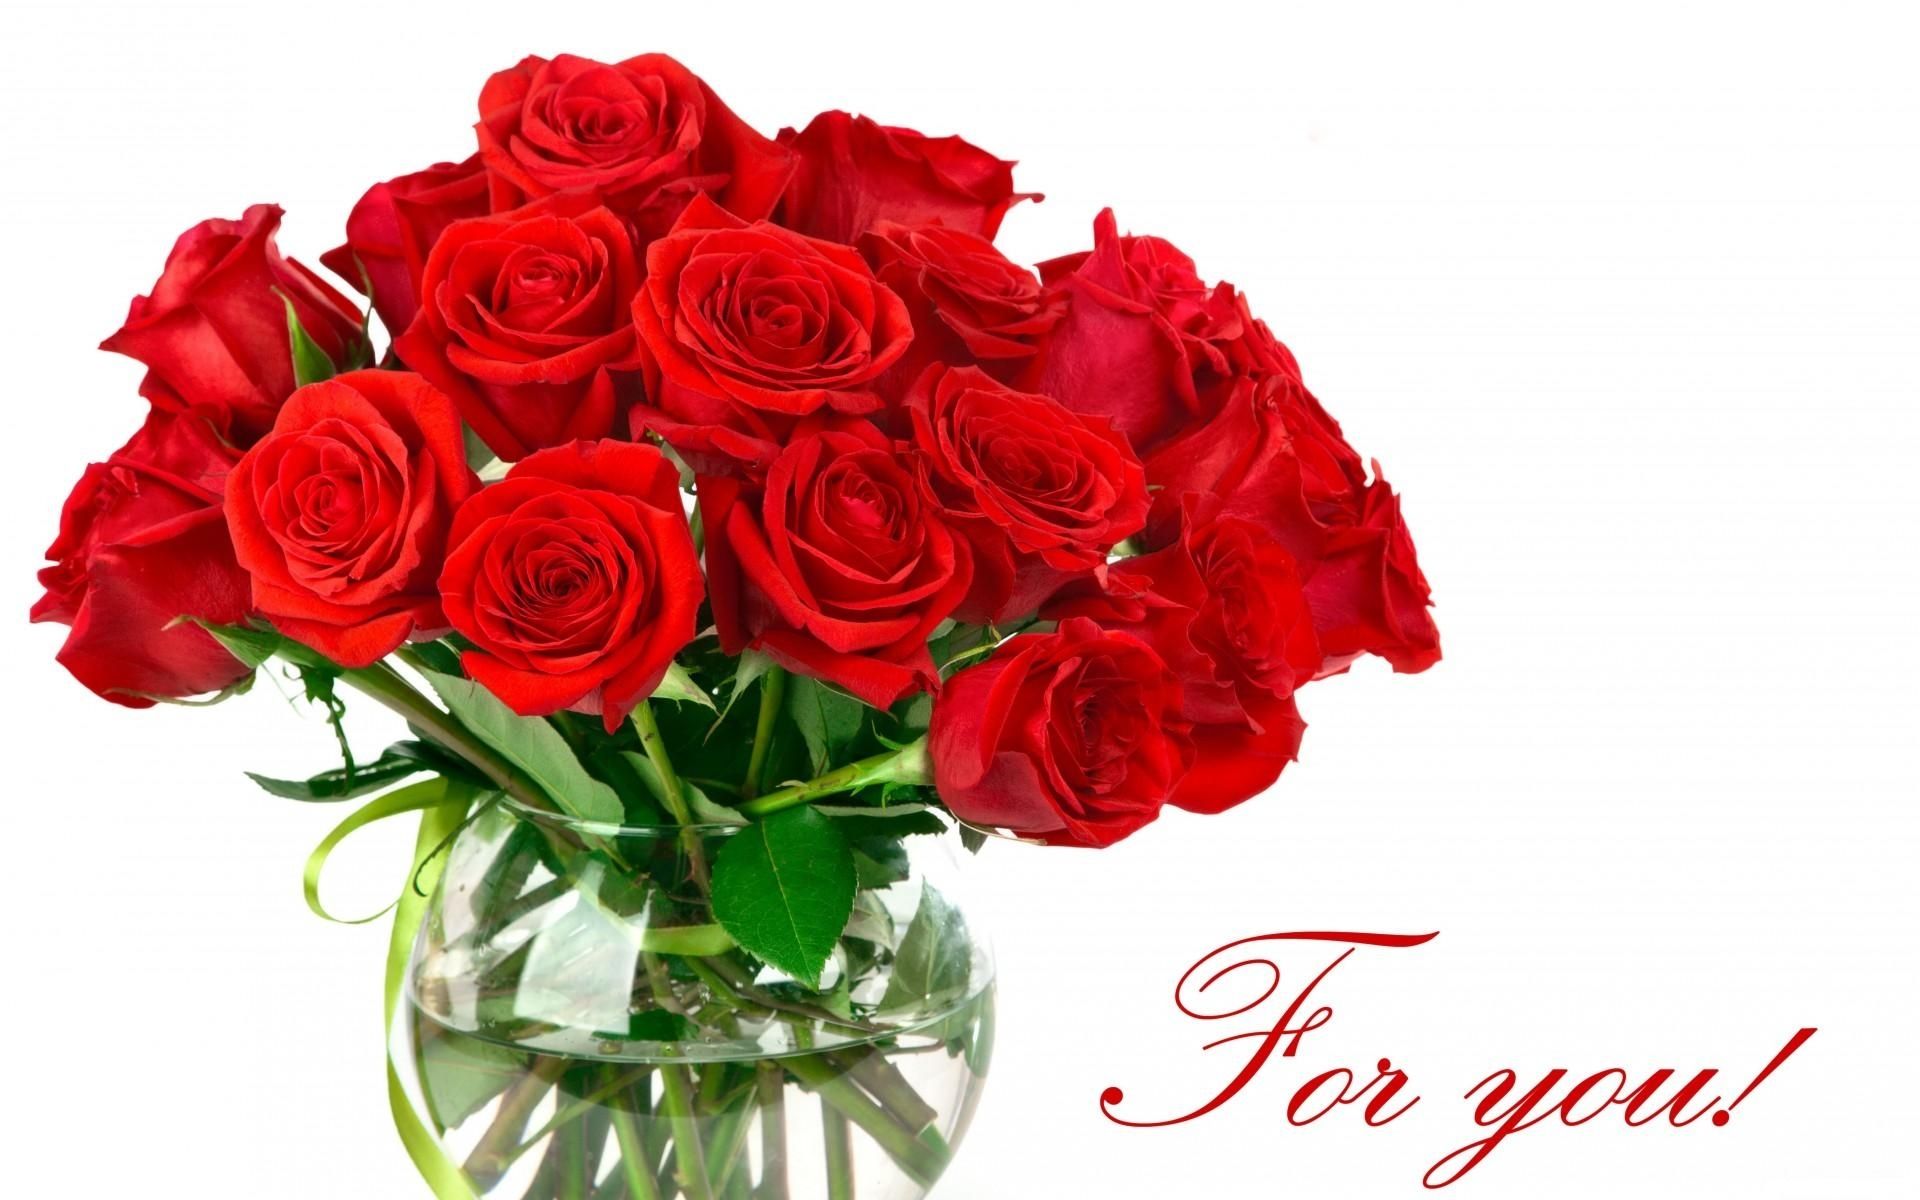 Cùng khám phá sự quyến rũ của những bông hoa hồng nhung tuyệt đẹp và đầy nổi bật qua những bức ảnh bạn sắp xem. Với sự kết hợp của màu sắc trầm và tinh tế và hương thơm quyến rũ, loài hoa này sẽ đưa bạn vào một thế giới thần tiên.